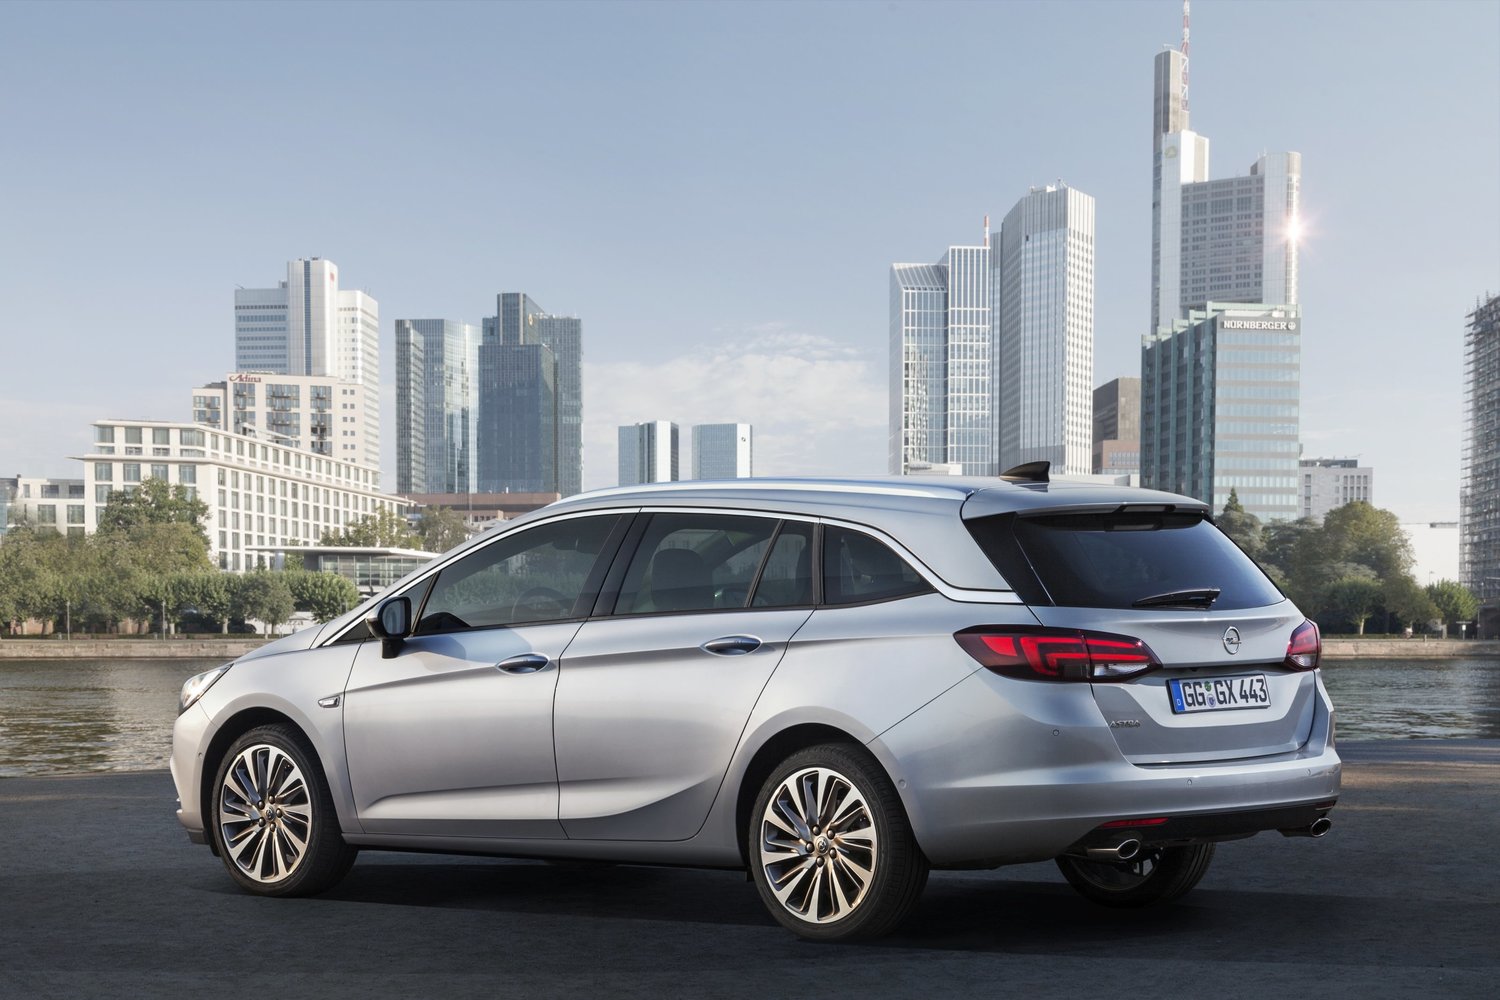 универсал Sports Tourer Opel Astra 2015 - 2016г выпуска модификация 1.0 AMT (105 л.с.)